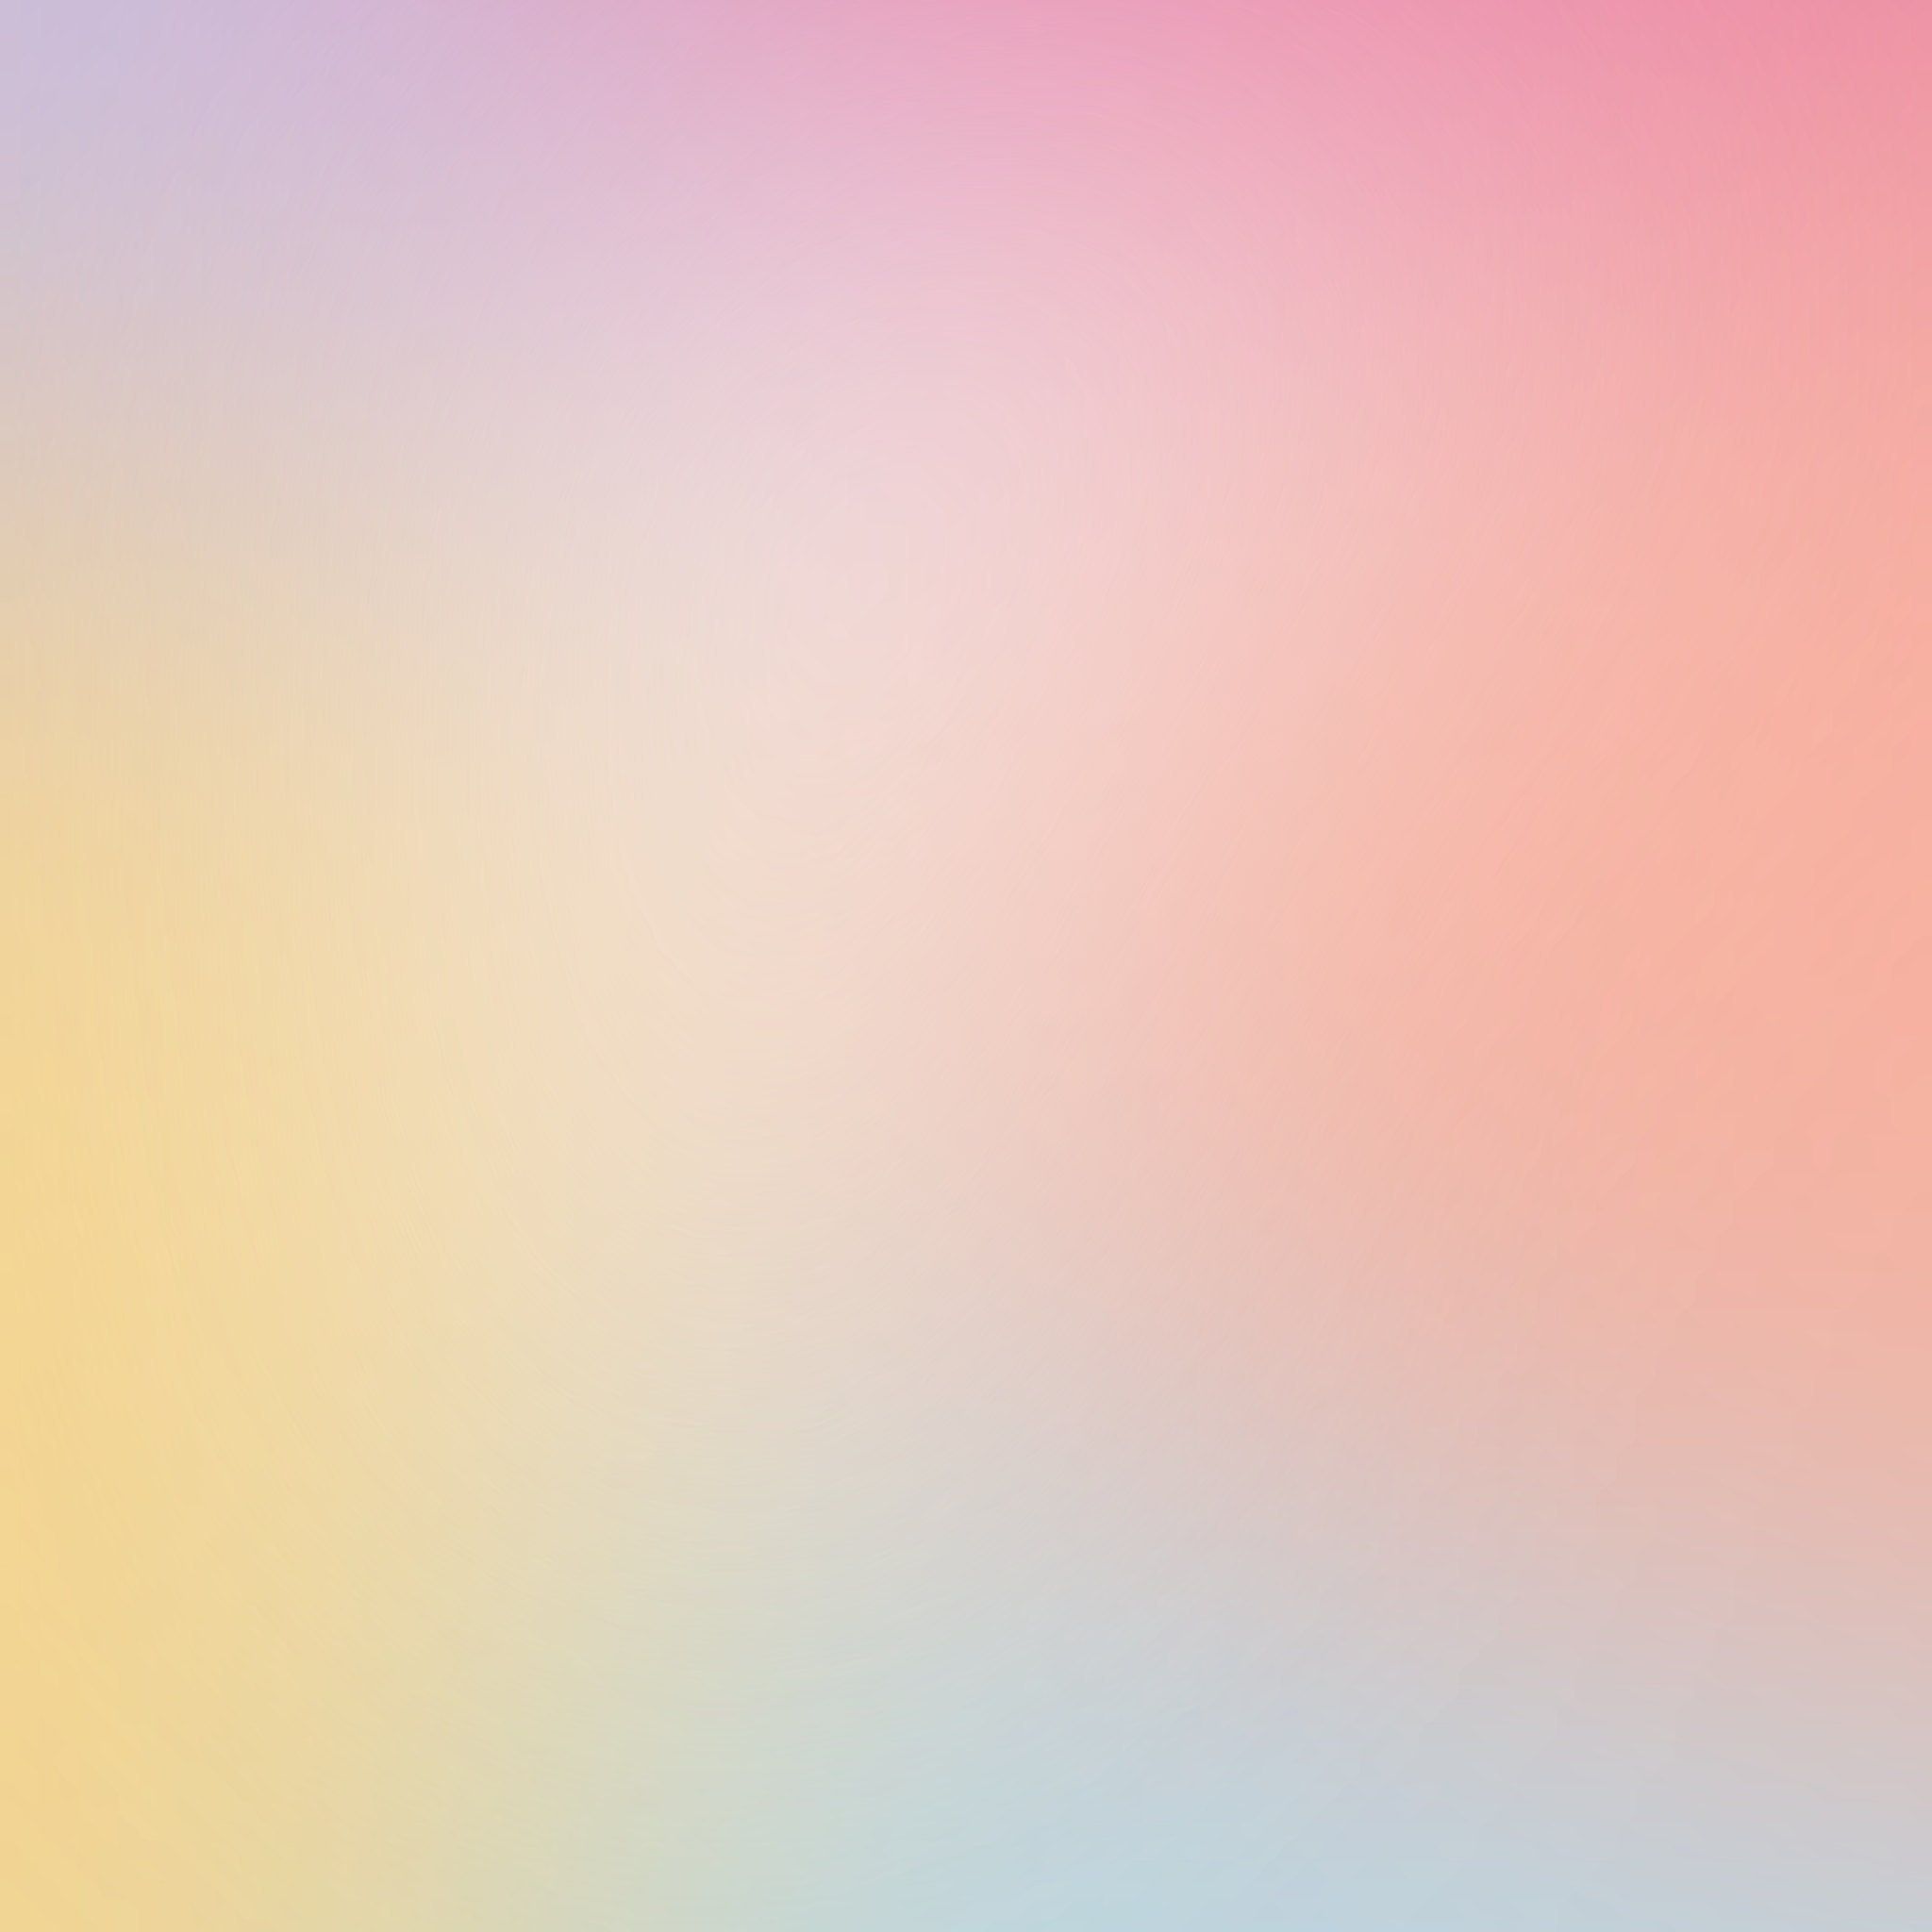  Farbverlauf Hintergrundbild 2048x2048. Ästhetischer Farbverlauf iPad Wallpaper Hintergrund Farbverlauf, abstrakt, INSTANT DOWNLOAD, iPad Wallpaper, niedlich iPad Wallpaper, iPad Pro Wallpaper